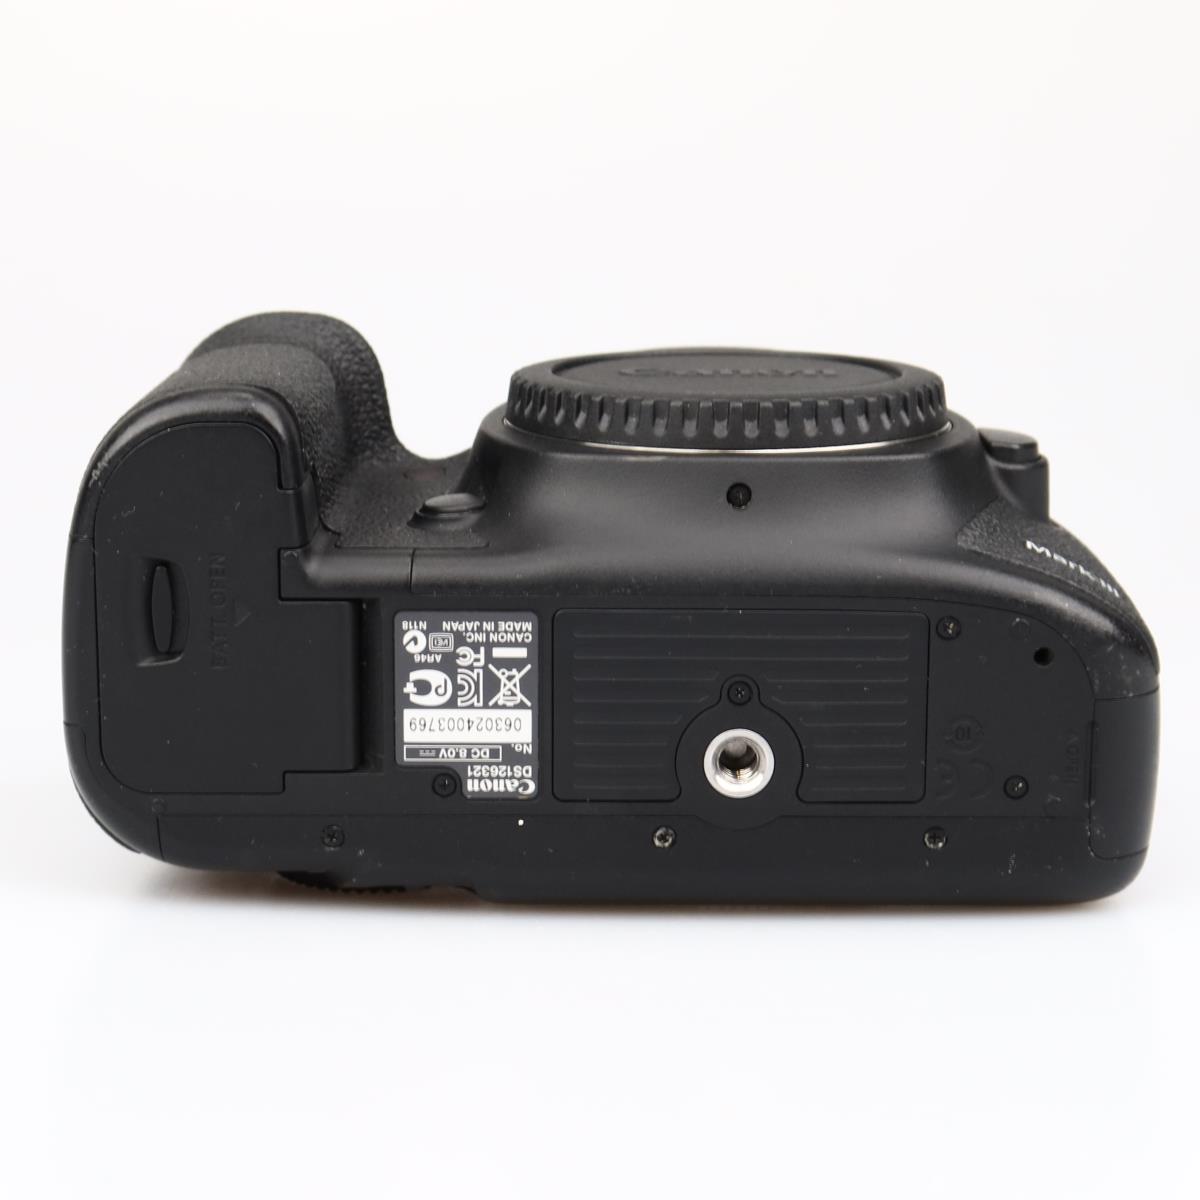 (Myyty) Canon EOS 5D Mark III runko (SC 49259) (käytetty)